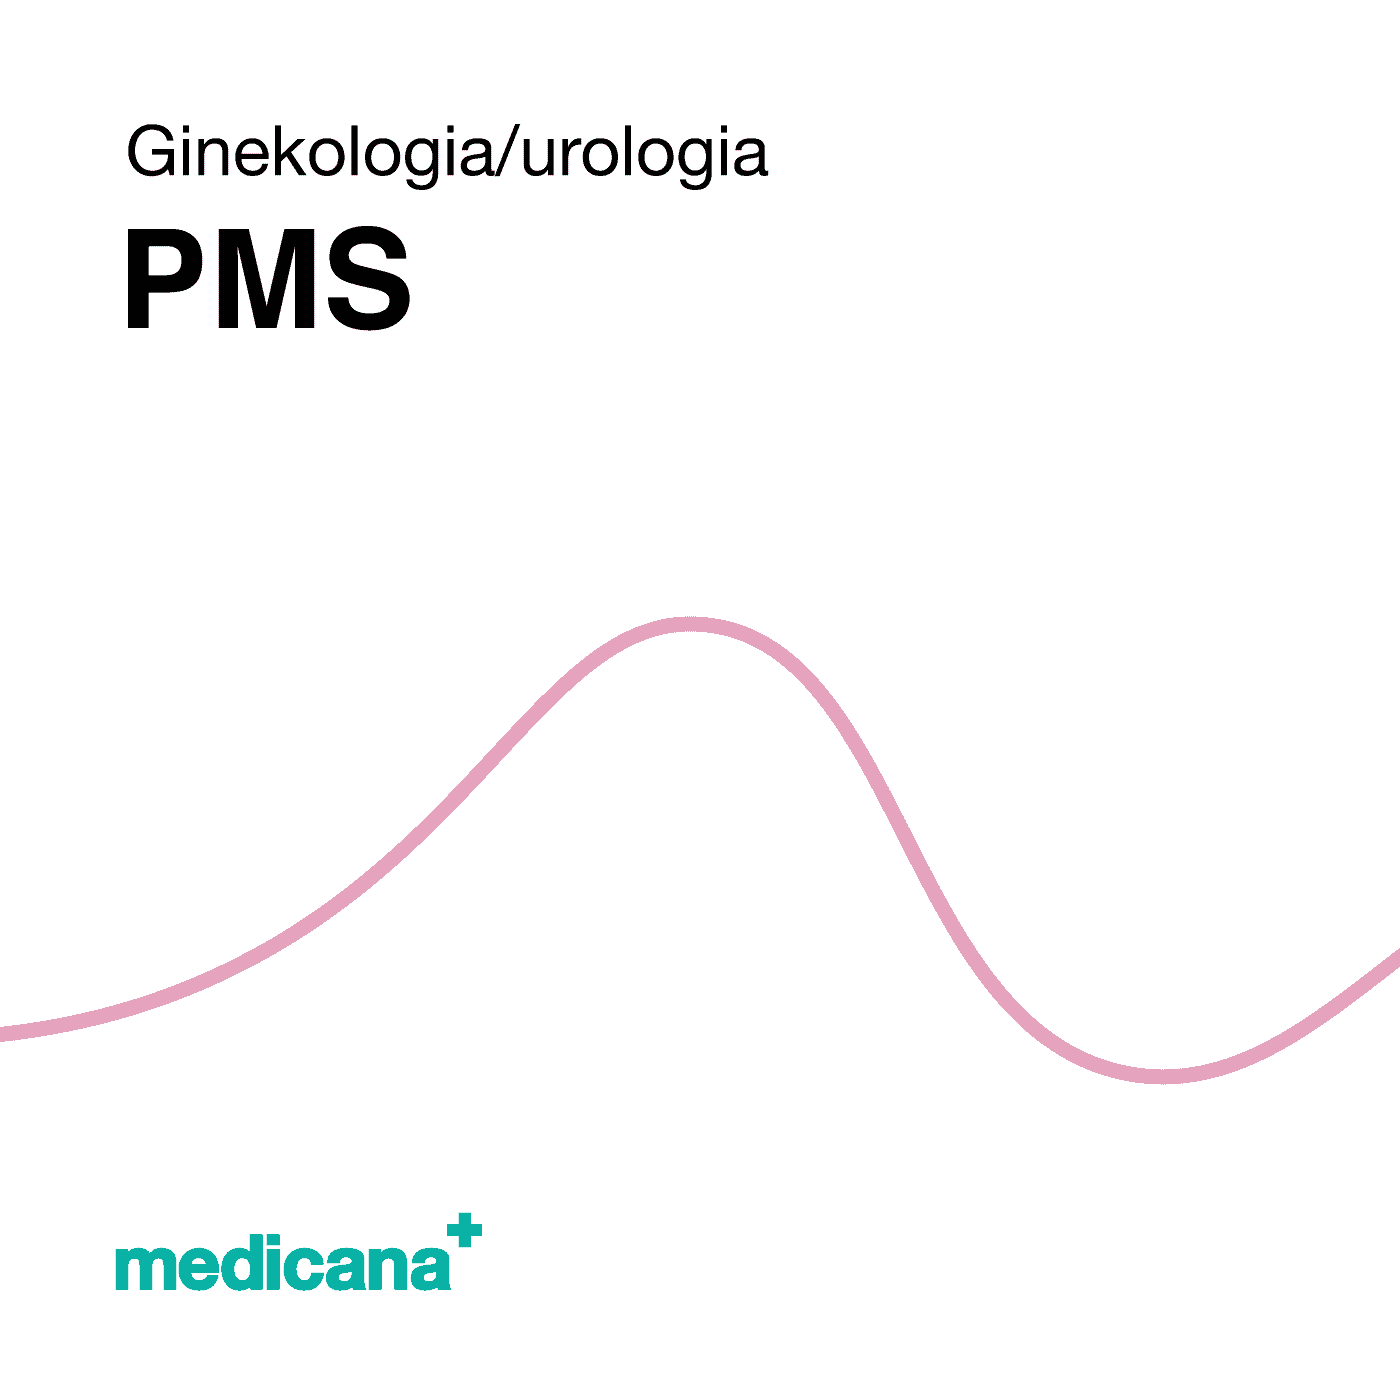 Grafika, białe tło różową kreską, czarnym napisem Ginekologia / Urologia - PMS i logo Medicana Centrum Terapii Medyczna Marihuana w lewym dolnym rogu.